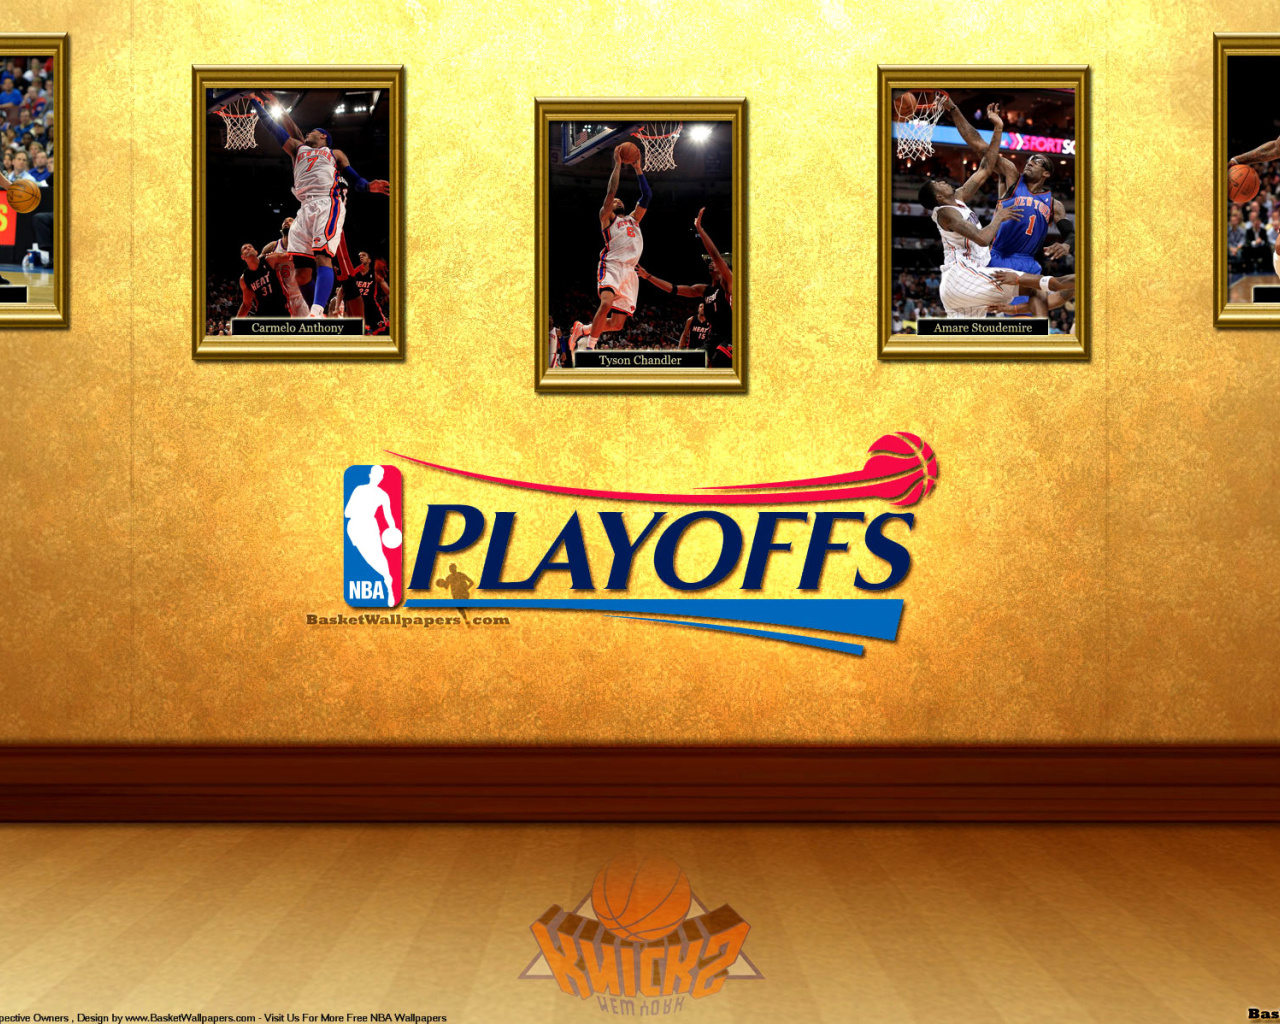 New York Knicks NBA Playoffs screenshot #1 1280x1024